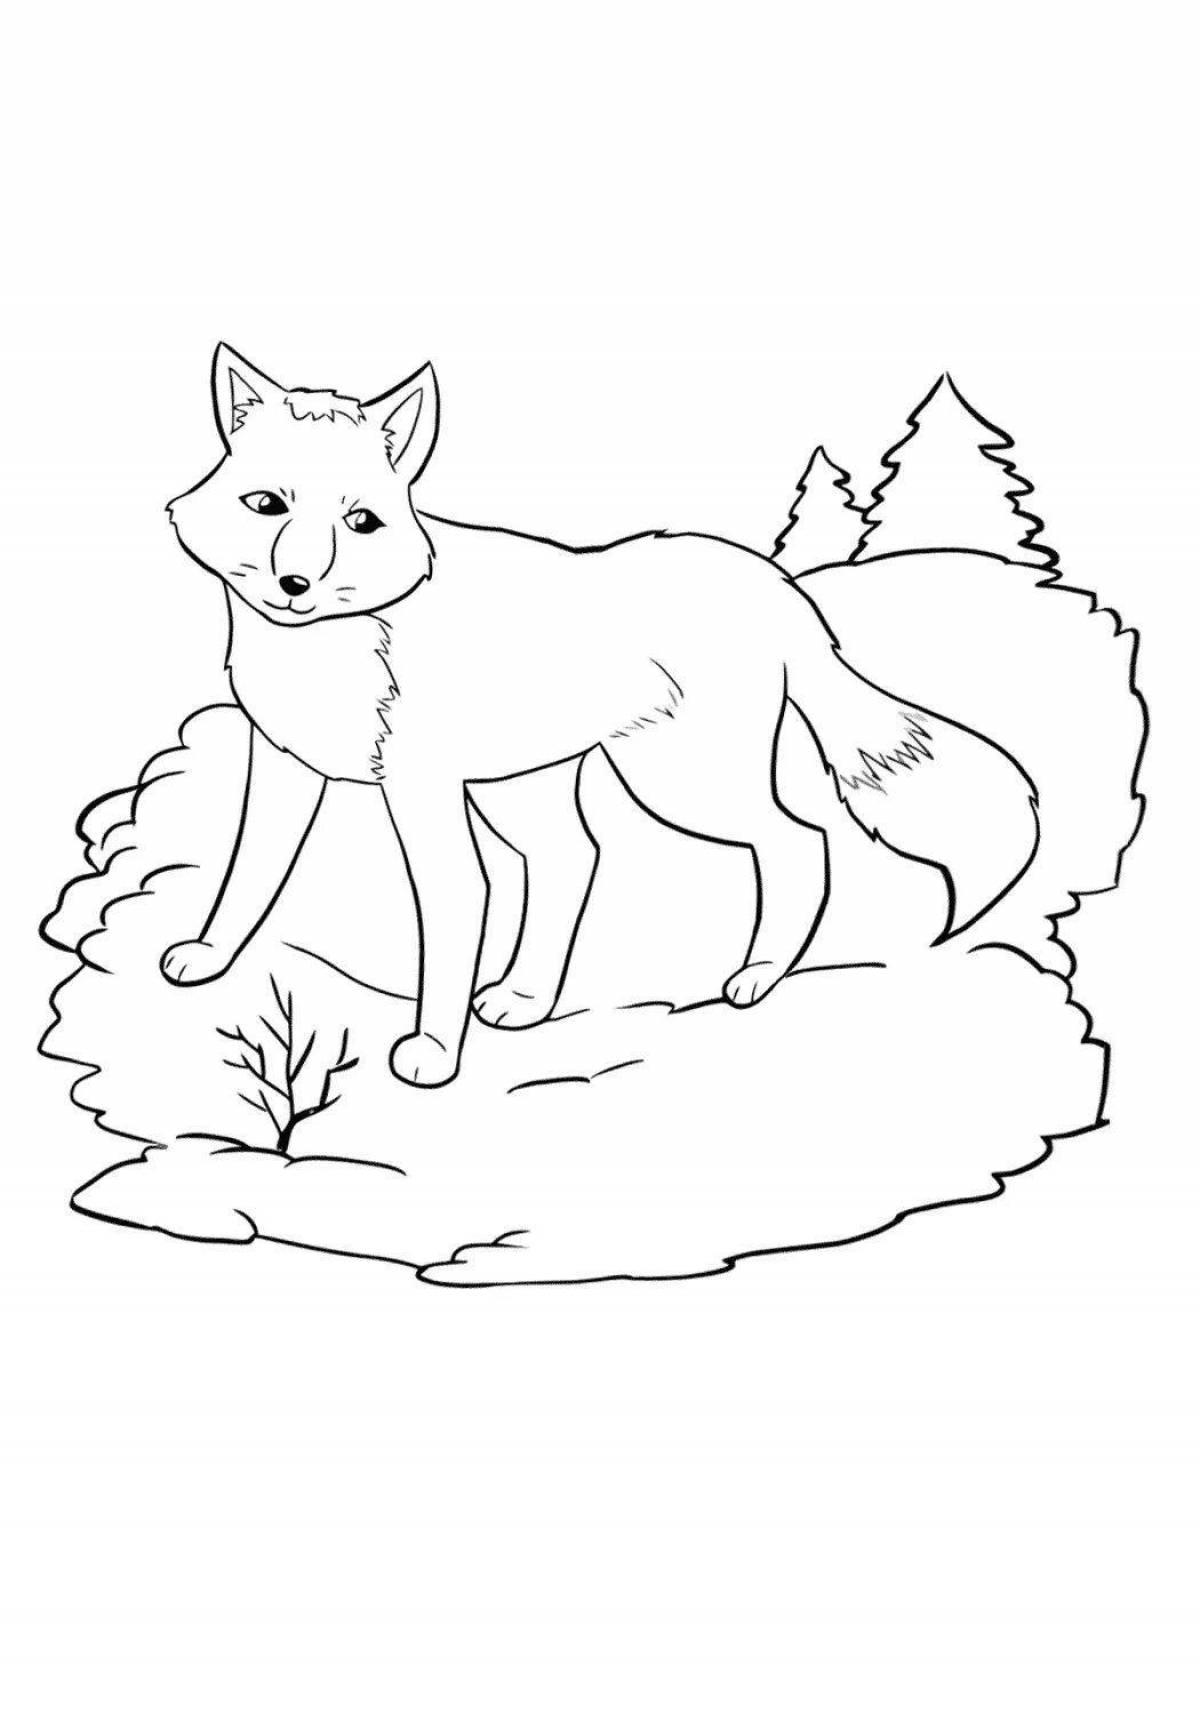 Colouring winter fox